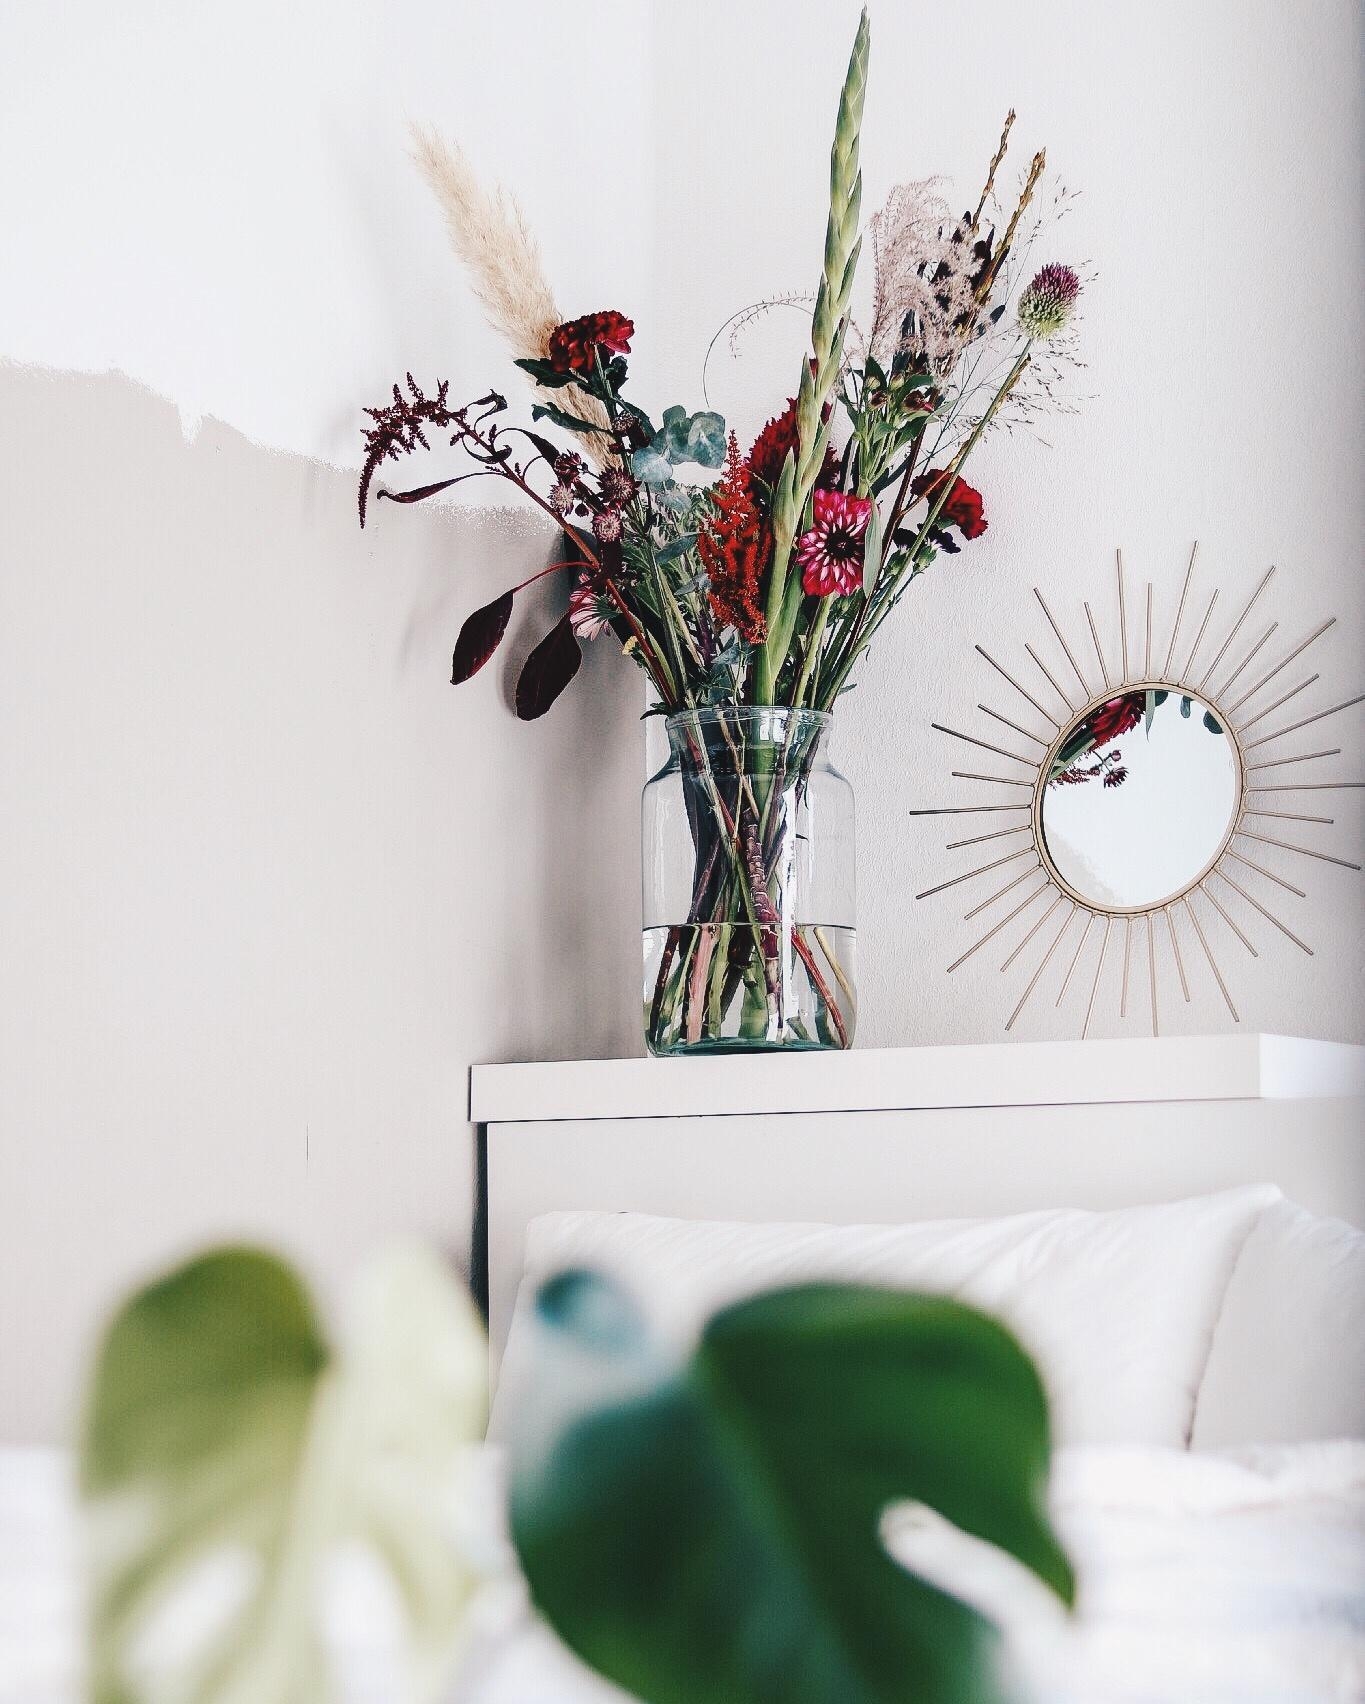 Frische Blumen dürfen nie fehlen!
#couchliebt #skandistyle #freshflowers #blumenliebe